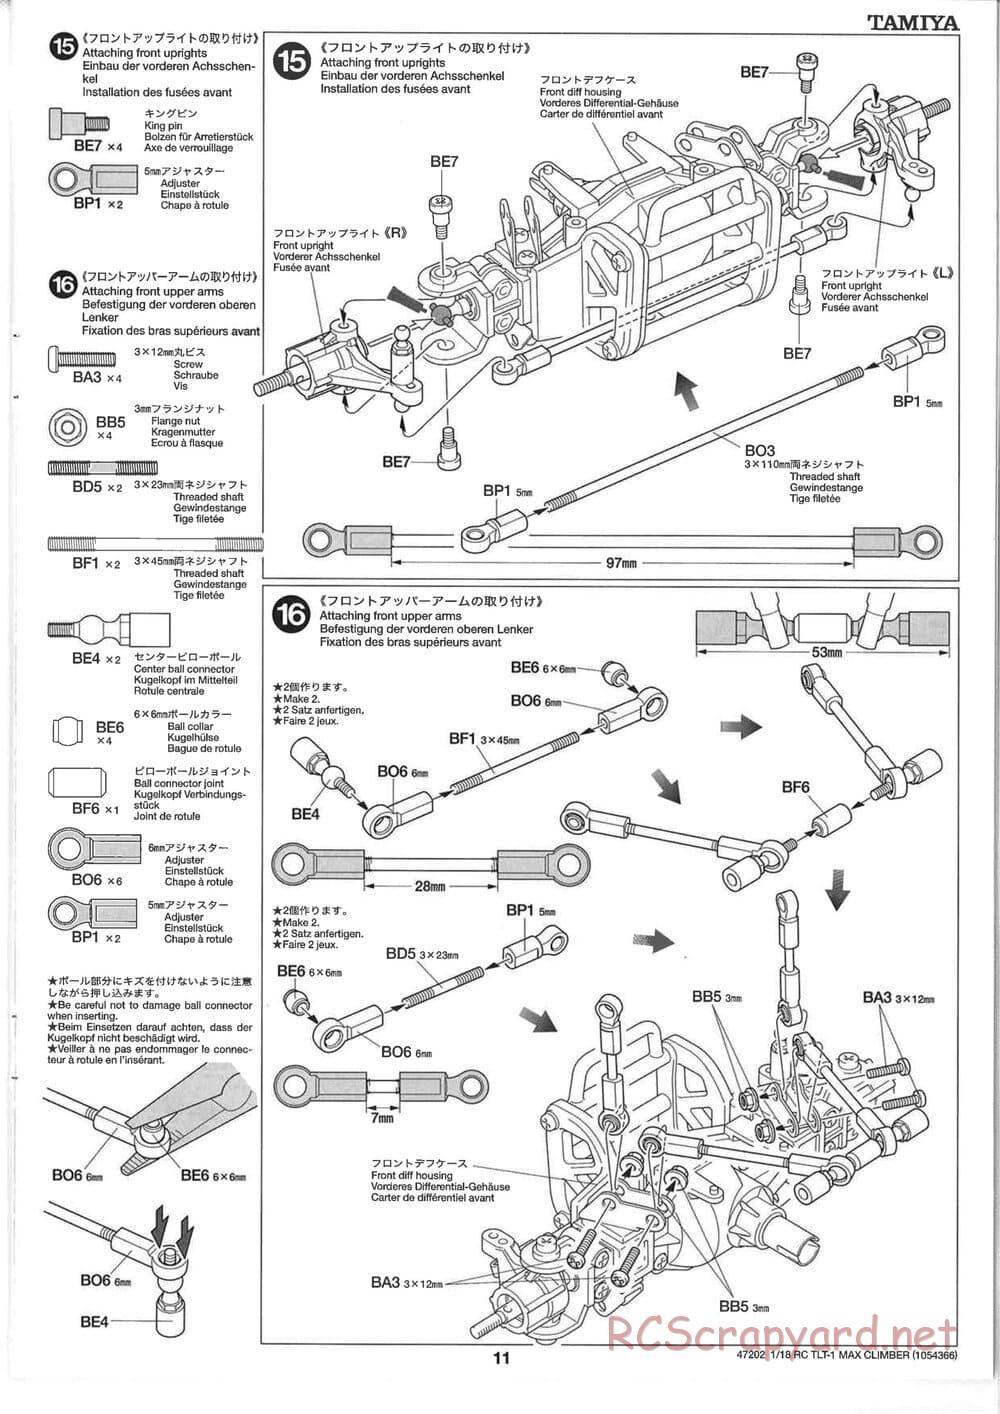 Tamiya - Max Climber - TLT-1 Chassis - Manual - Page 11